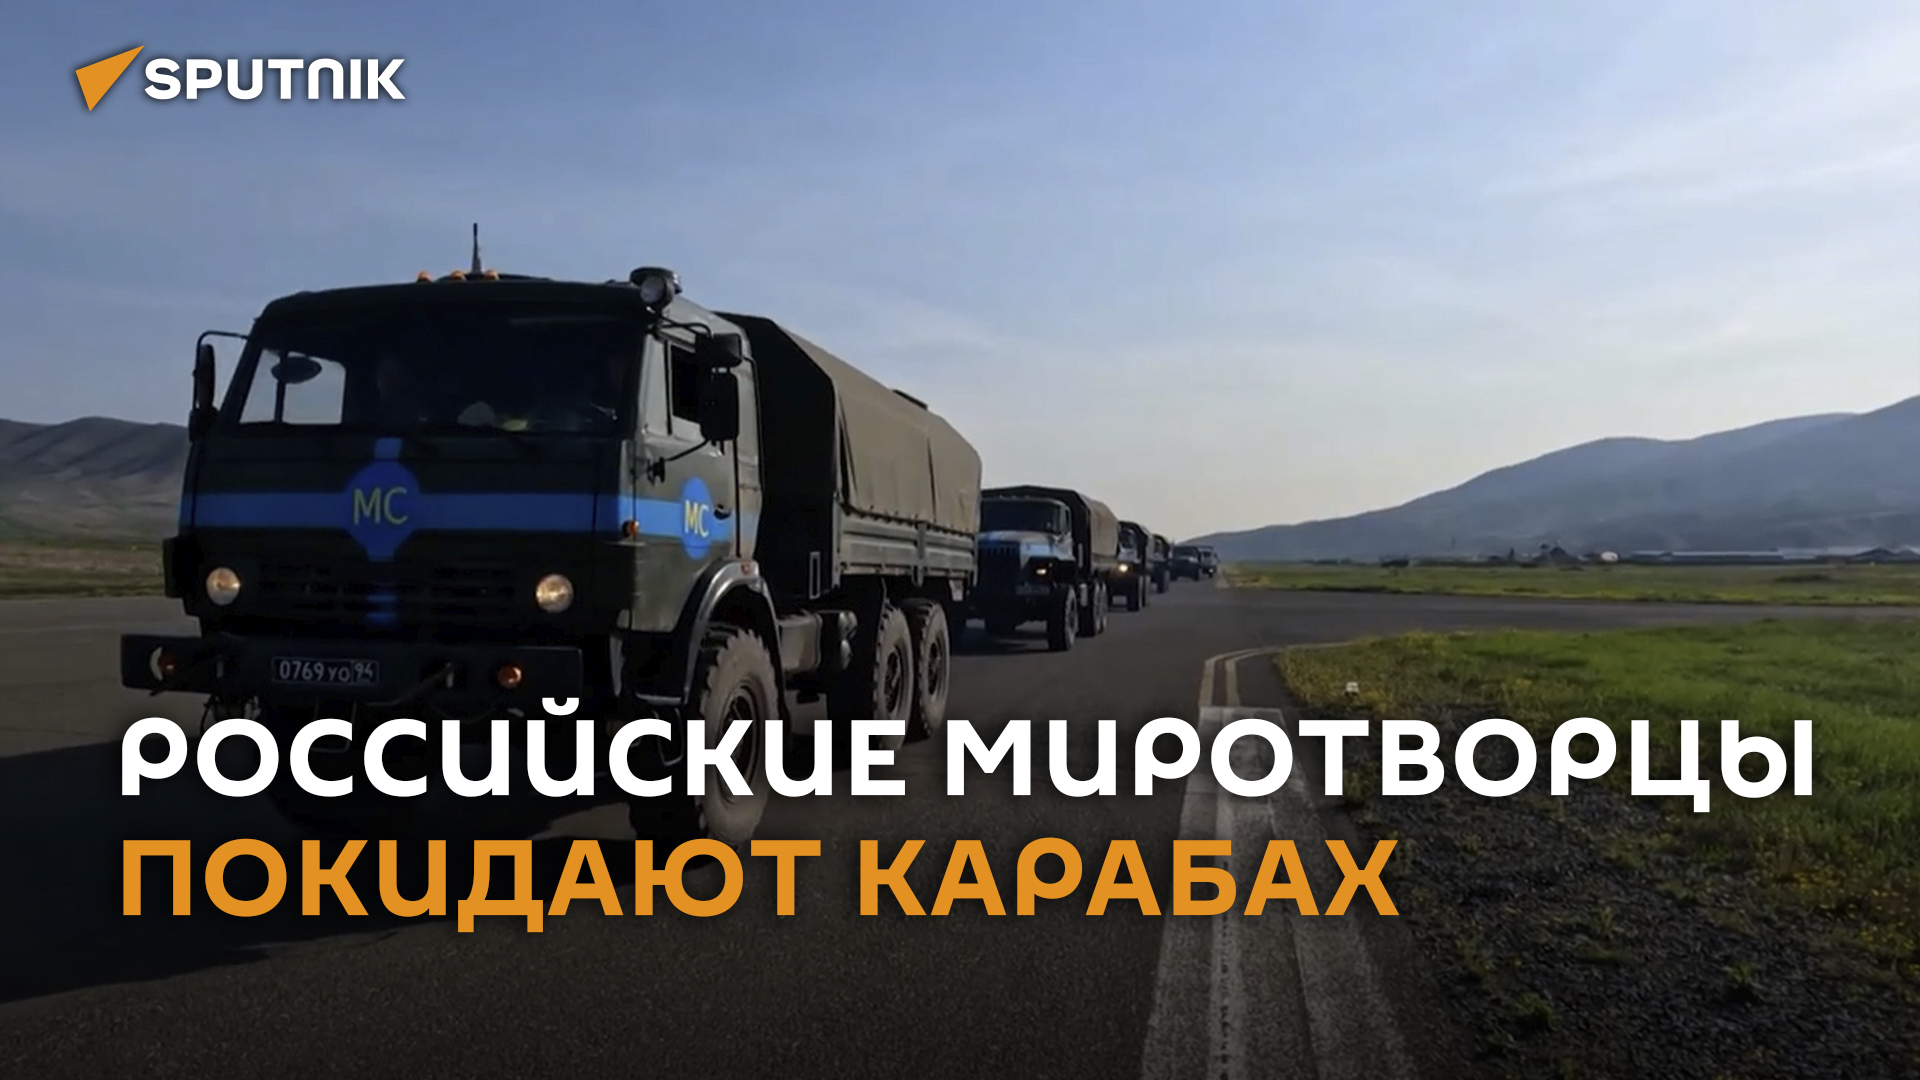 Российские миротворцы уезжают из Карабаха – видео